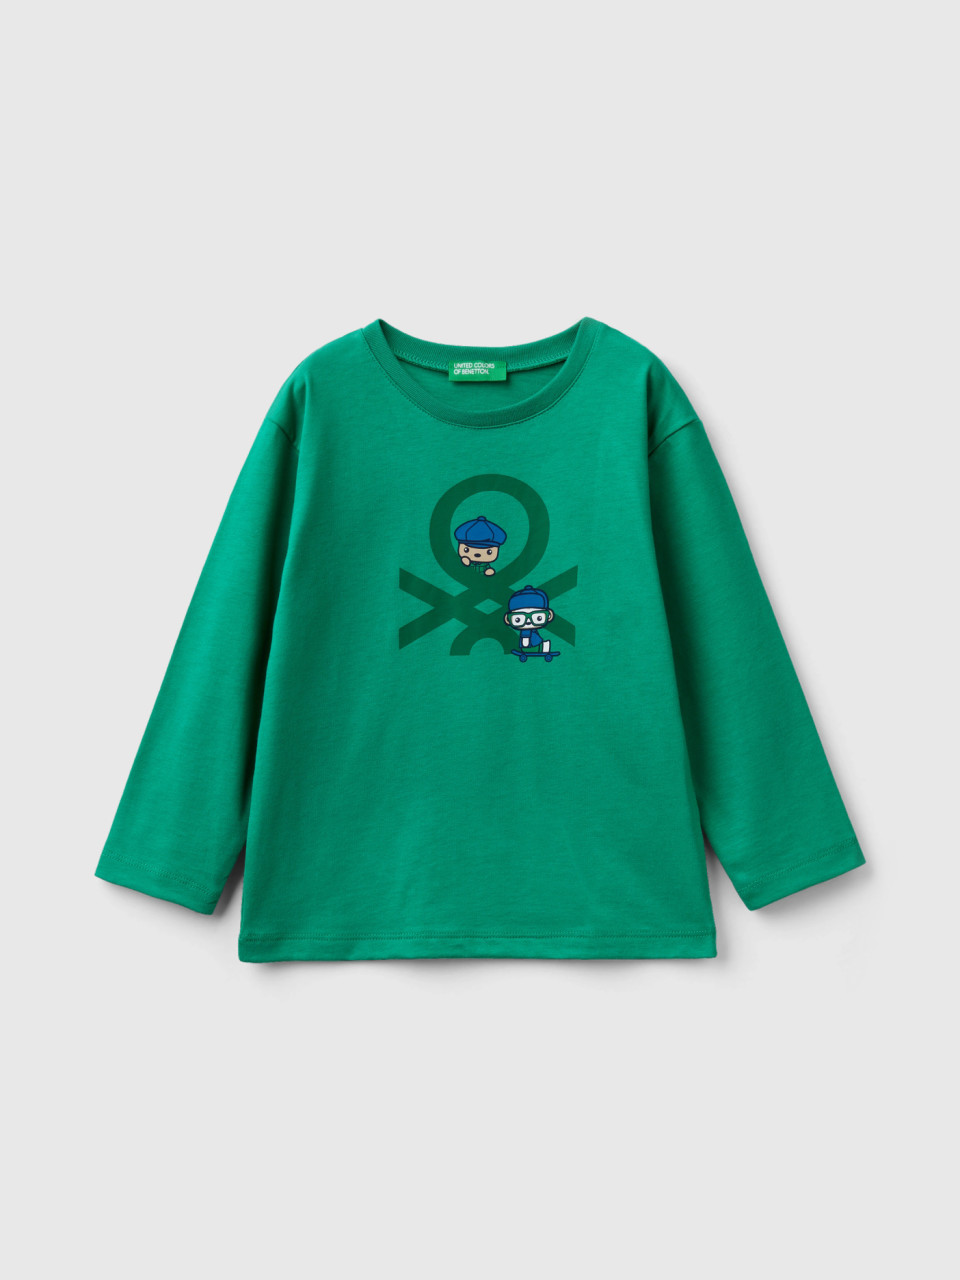 Benetton, Long Sleeve Organic Cotton T-shirt, Green, Kids